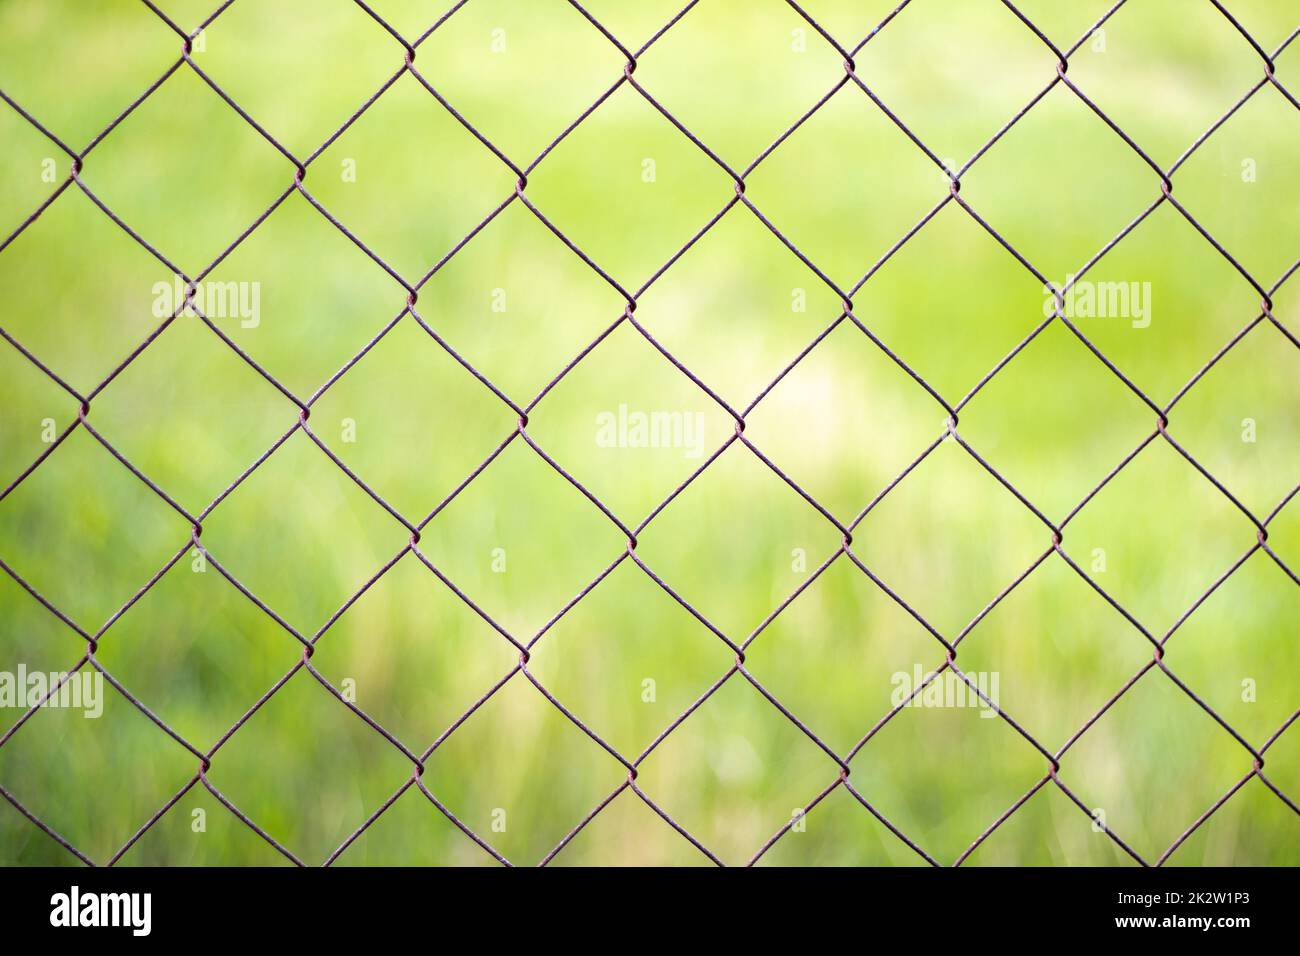 Netzkäfig im Garten mit grünem Gras als Hintergrund. Metallzaun mit Drahtgeflecht. Verschwommener Blick auf die Landschaft durch einen Stahlgitter-Metallzaun auf grünem Gras. Abstrakter Hintergrund. Stockfoto